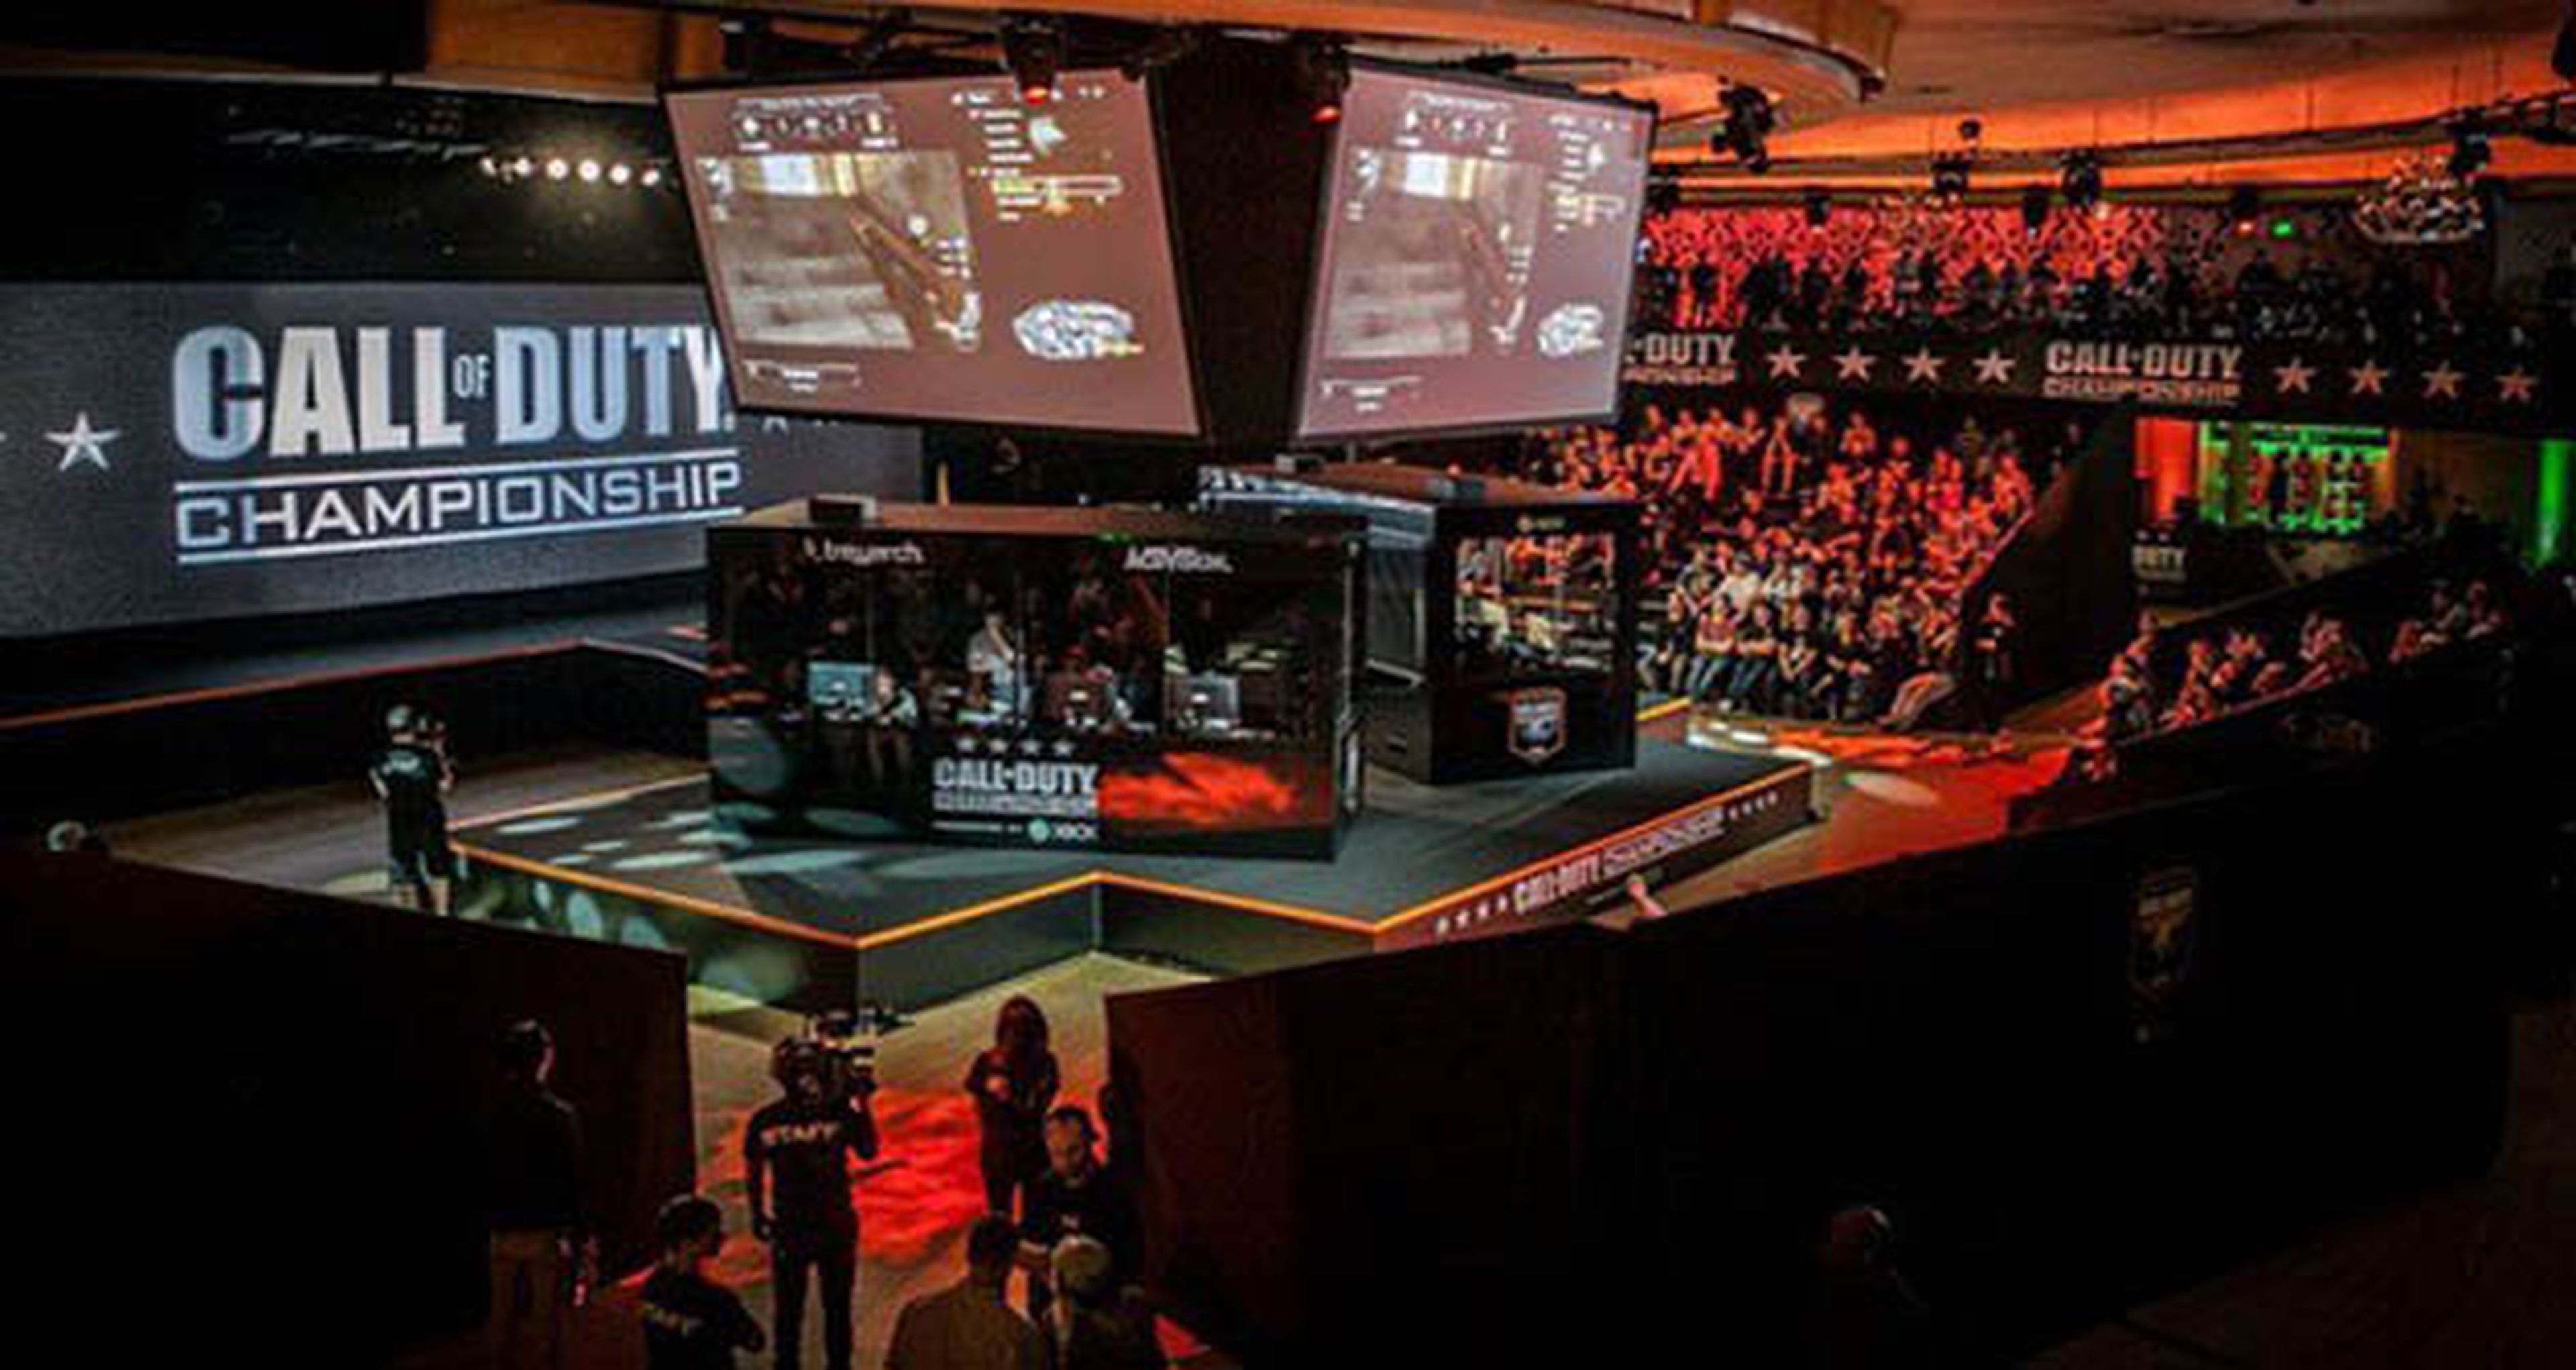 Ya puedes ver aquí la final de Call of Duty Championship 2015 en Los Ángeles